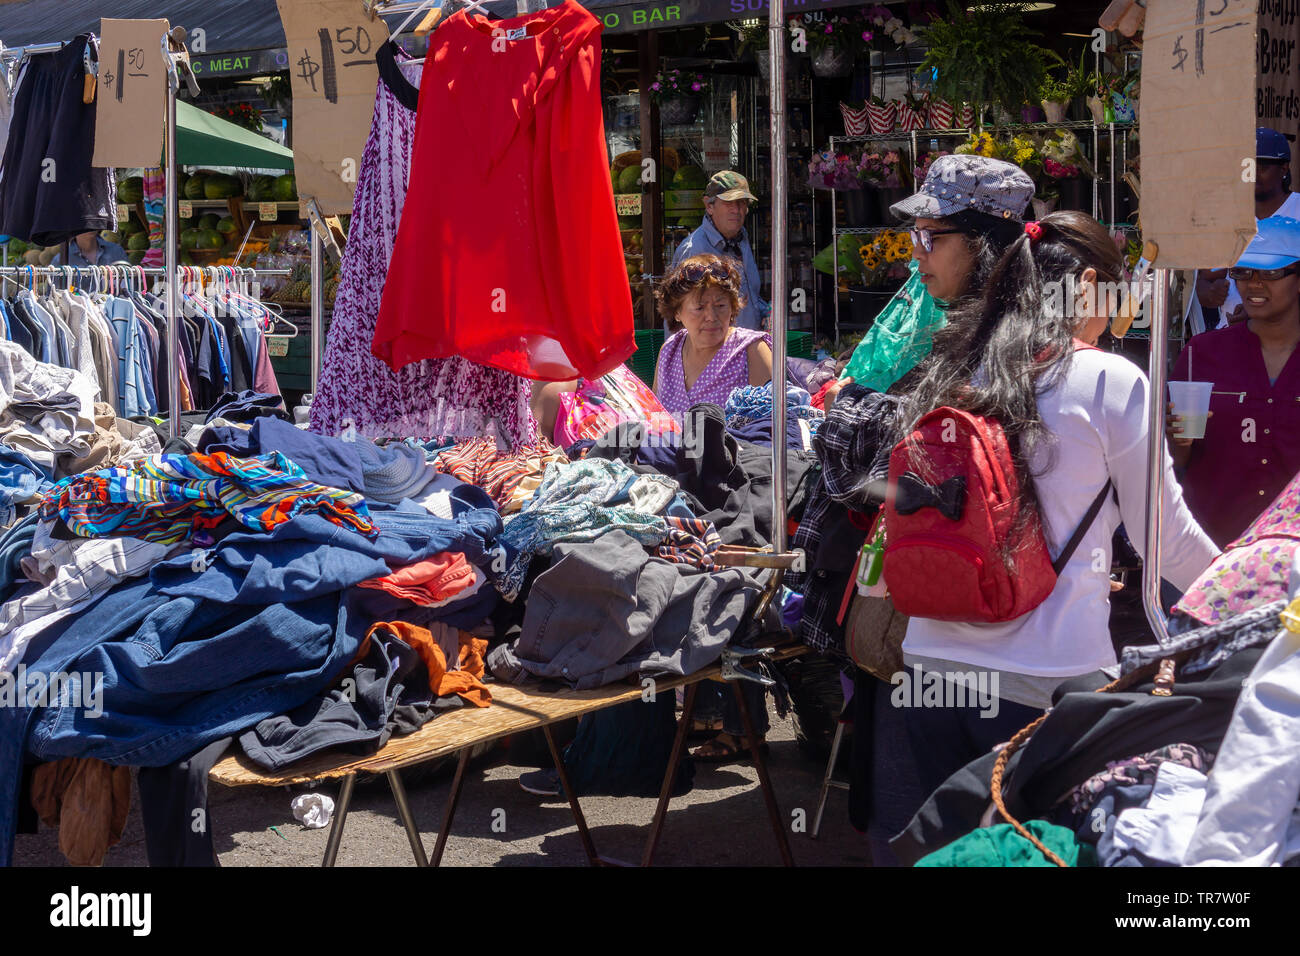 Buscar compradores chinos baratos ropa fabricada en una feria de la calle  en el barrio de Astoria de Nueva York el lunes, 27 de mayo de 2019. (©  Richard B. Levine Fotografía